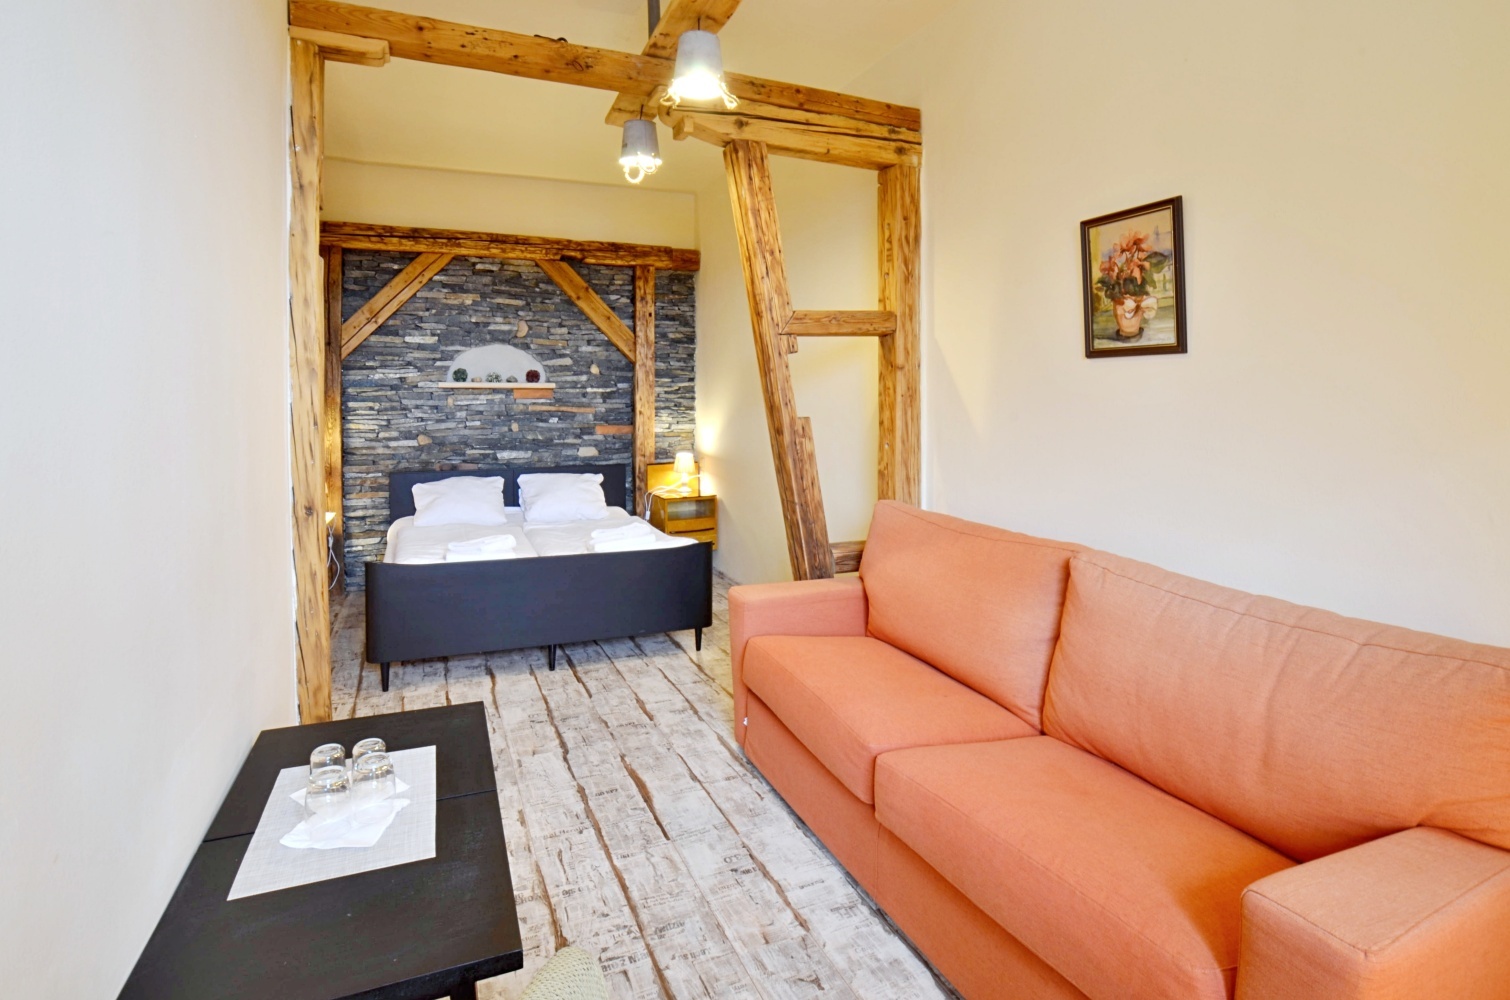 Hotelový pokoj ve stylo kámen, dřevo a retro